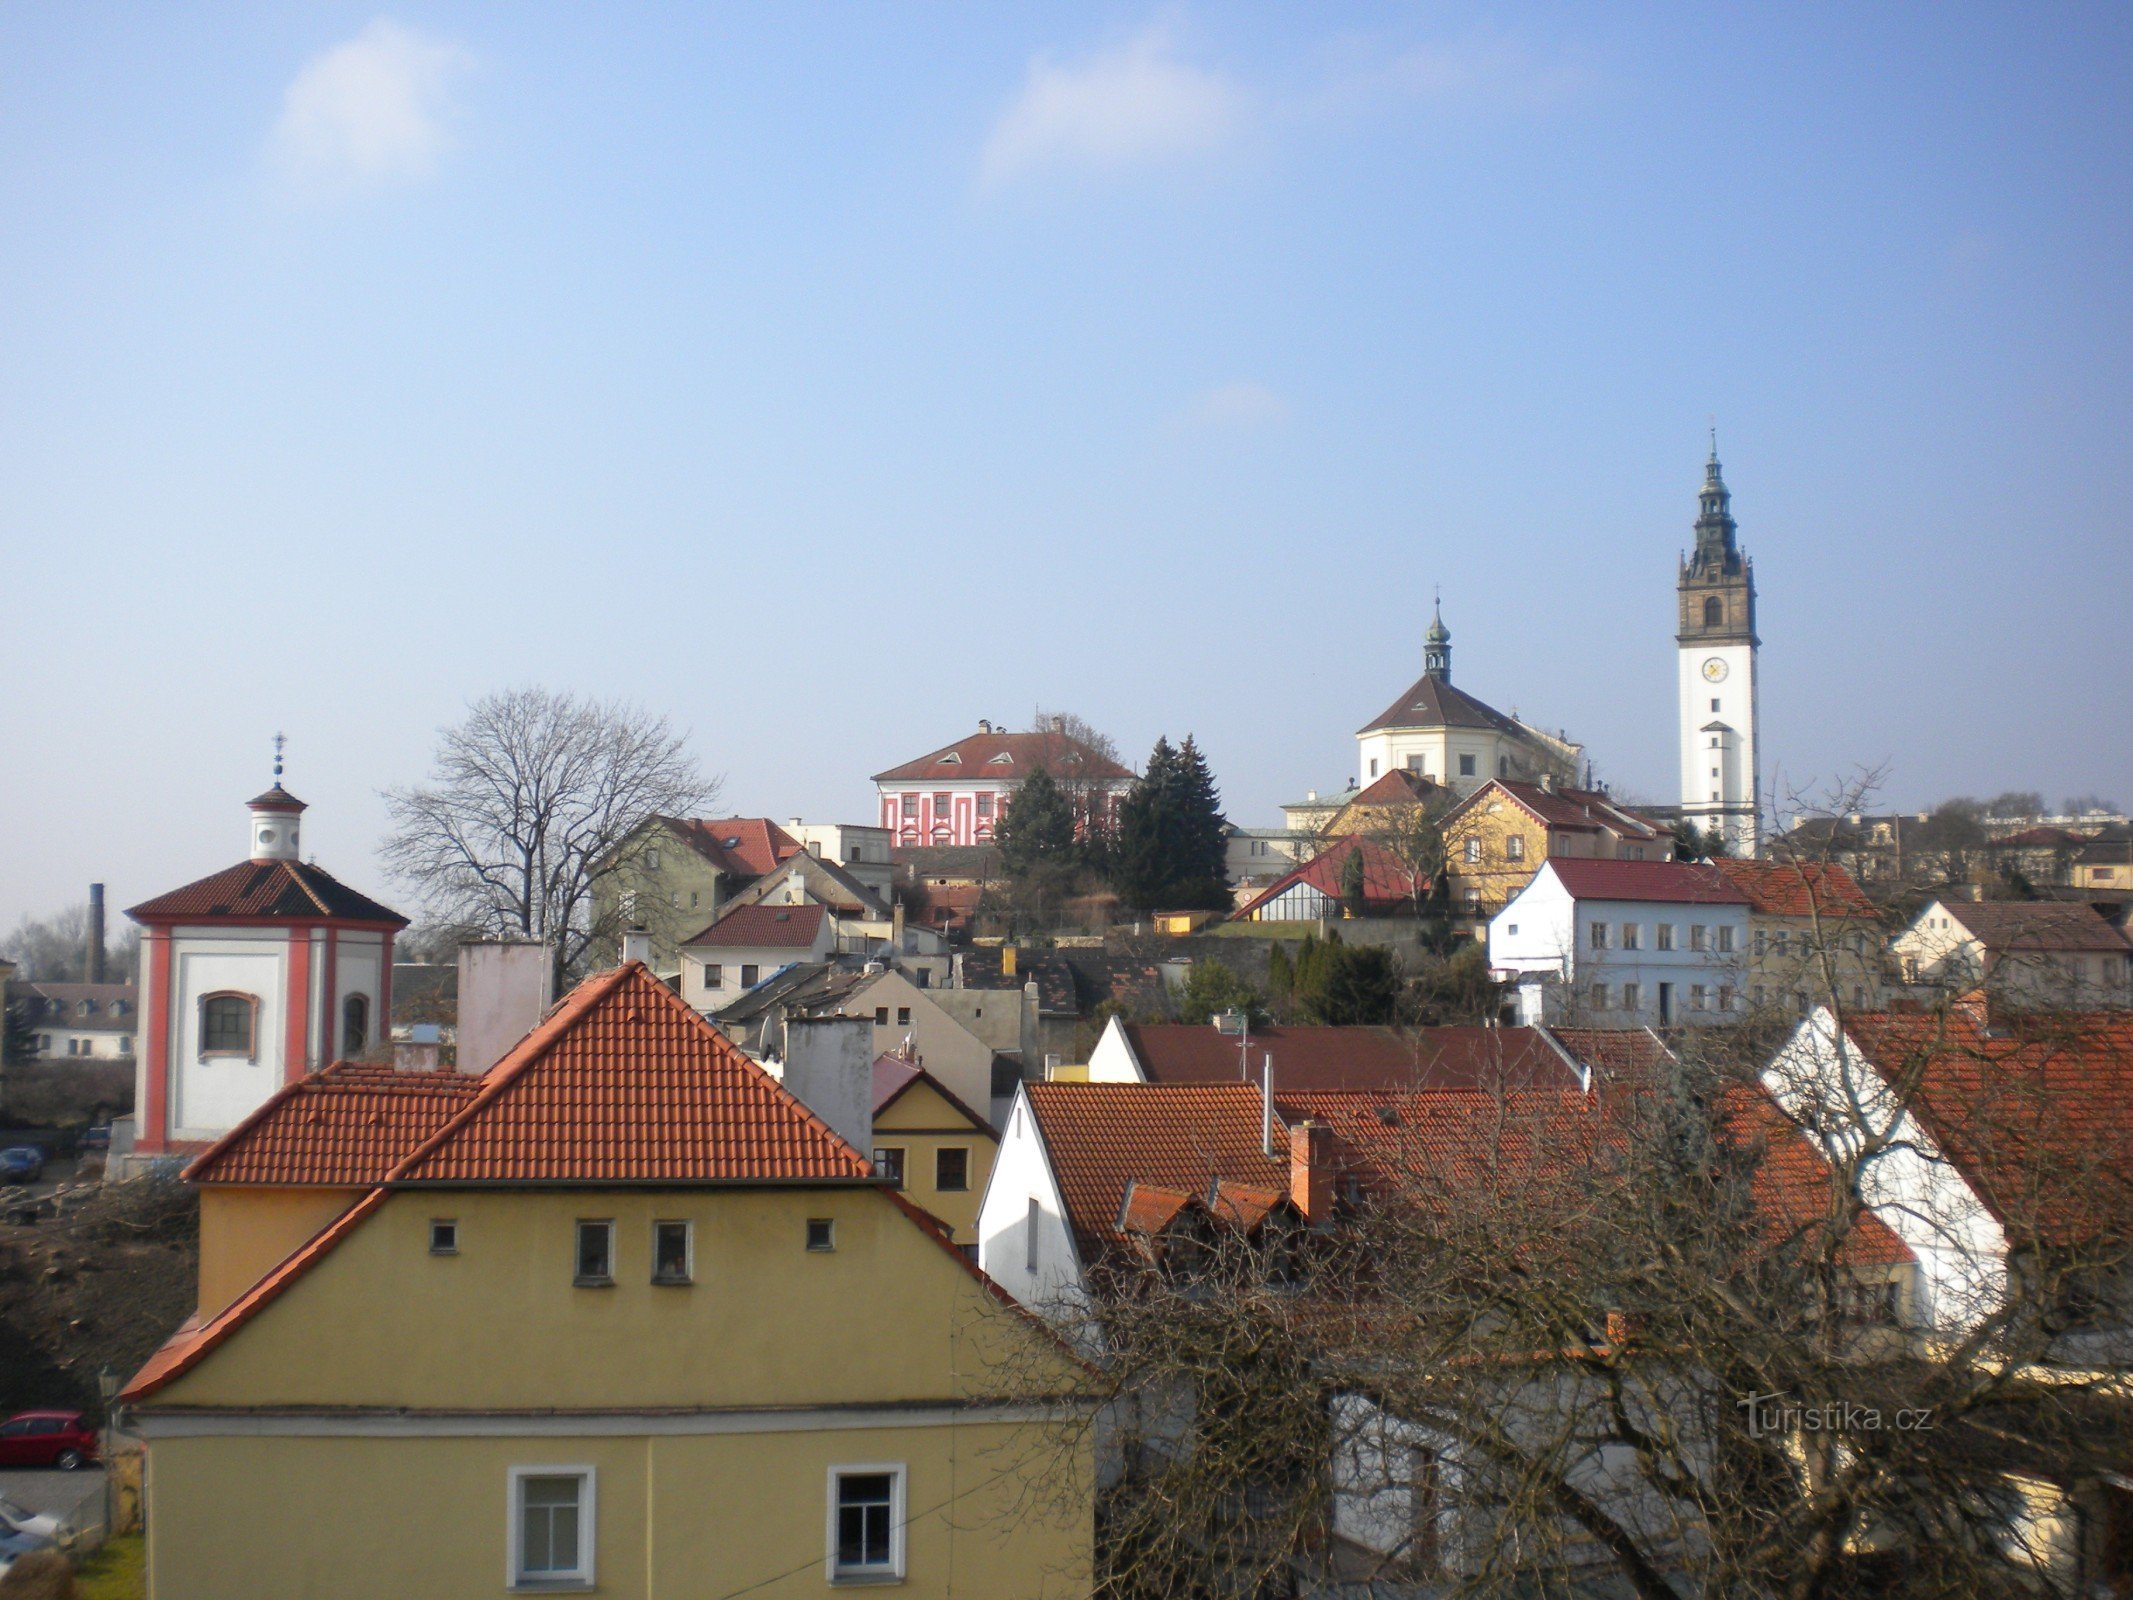 Uitzicht vanaf het hek naar Dómský pahorek.